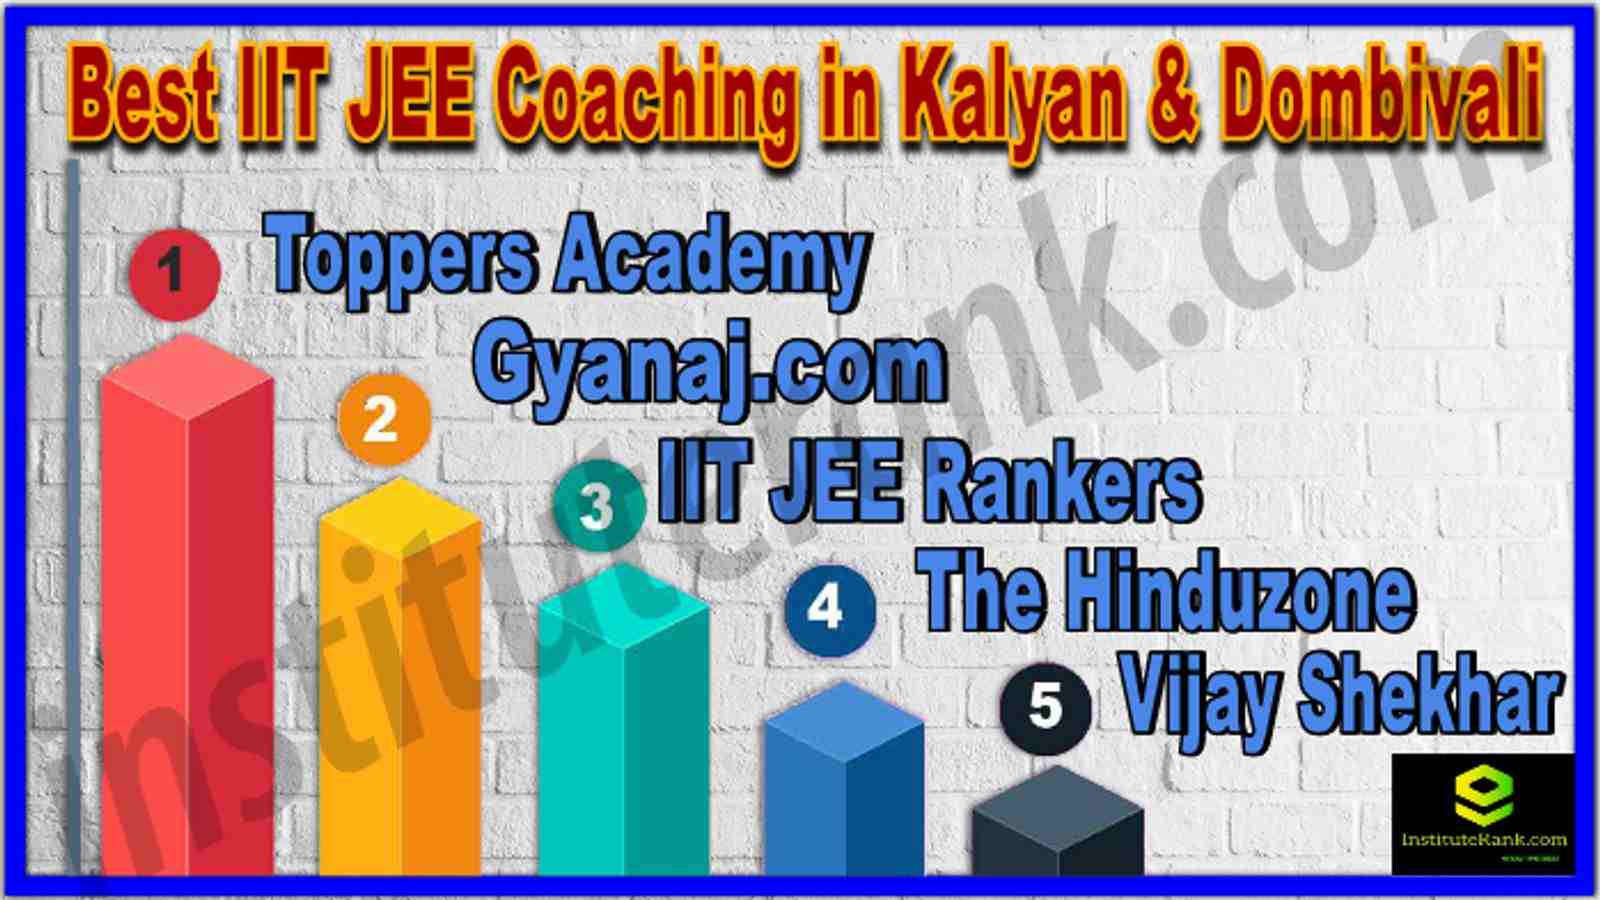 Best IIT JEE Coaching in Kalyan & Dombivali